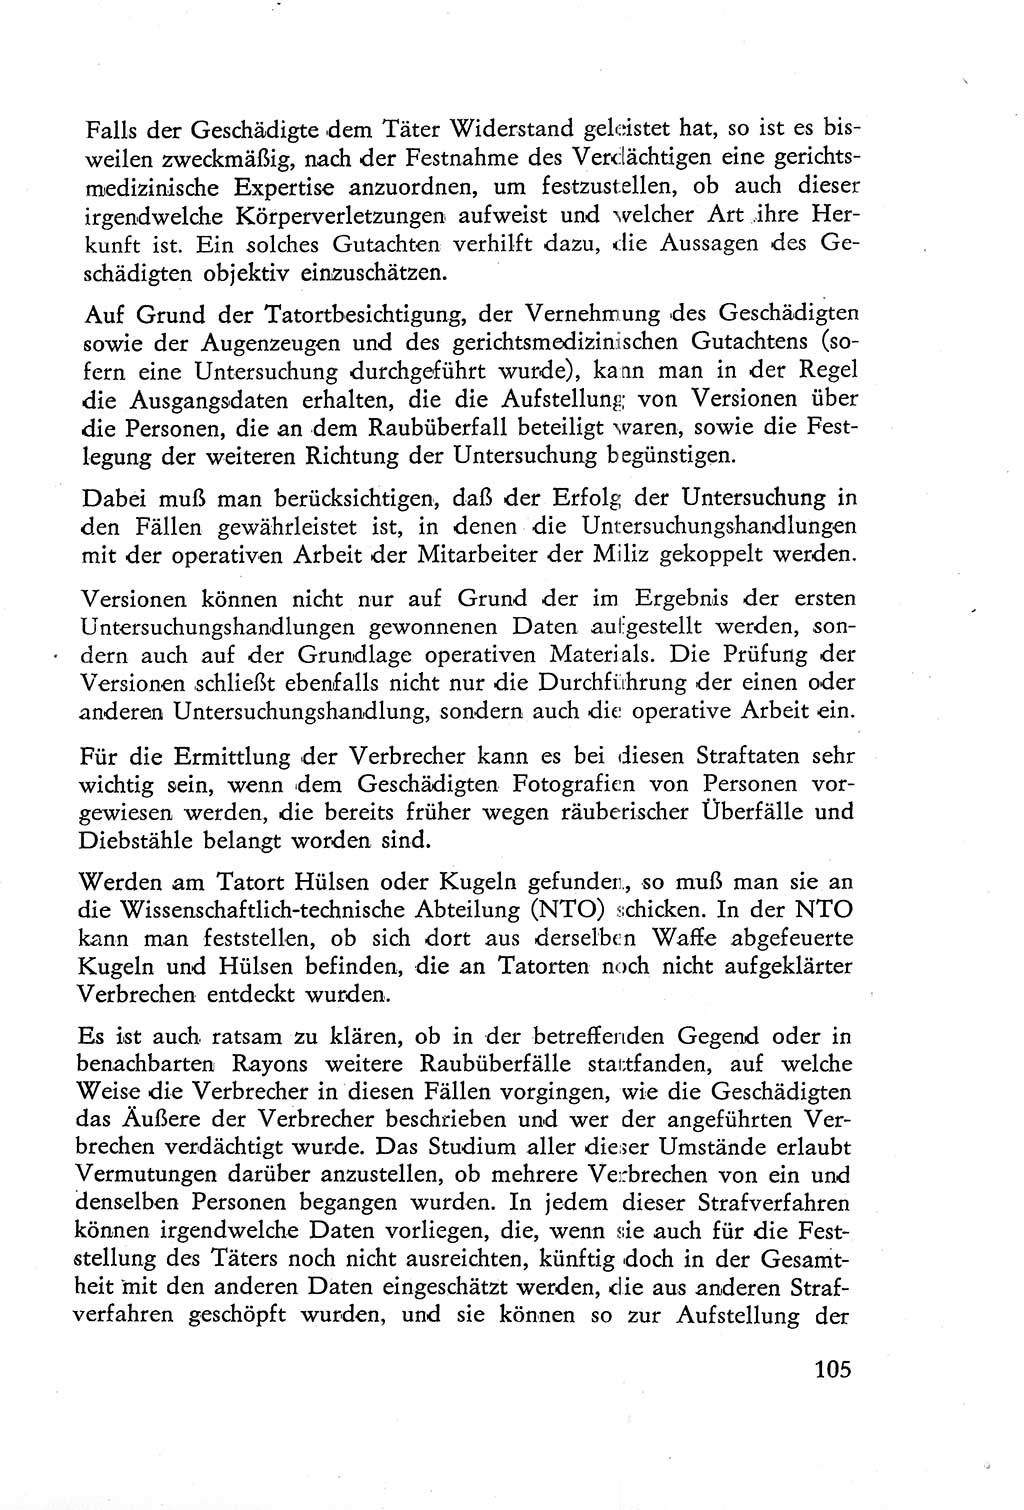 Die Untersuchung einzelner Verbrechensarten [Deutsche Demokratische Republik (DDR)] 1960, Seite 105 (Unters. Verbr.-Art. DDR 1960, S. 105)